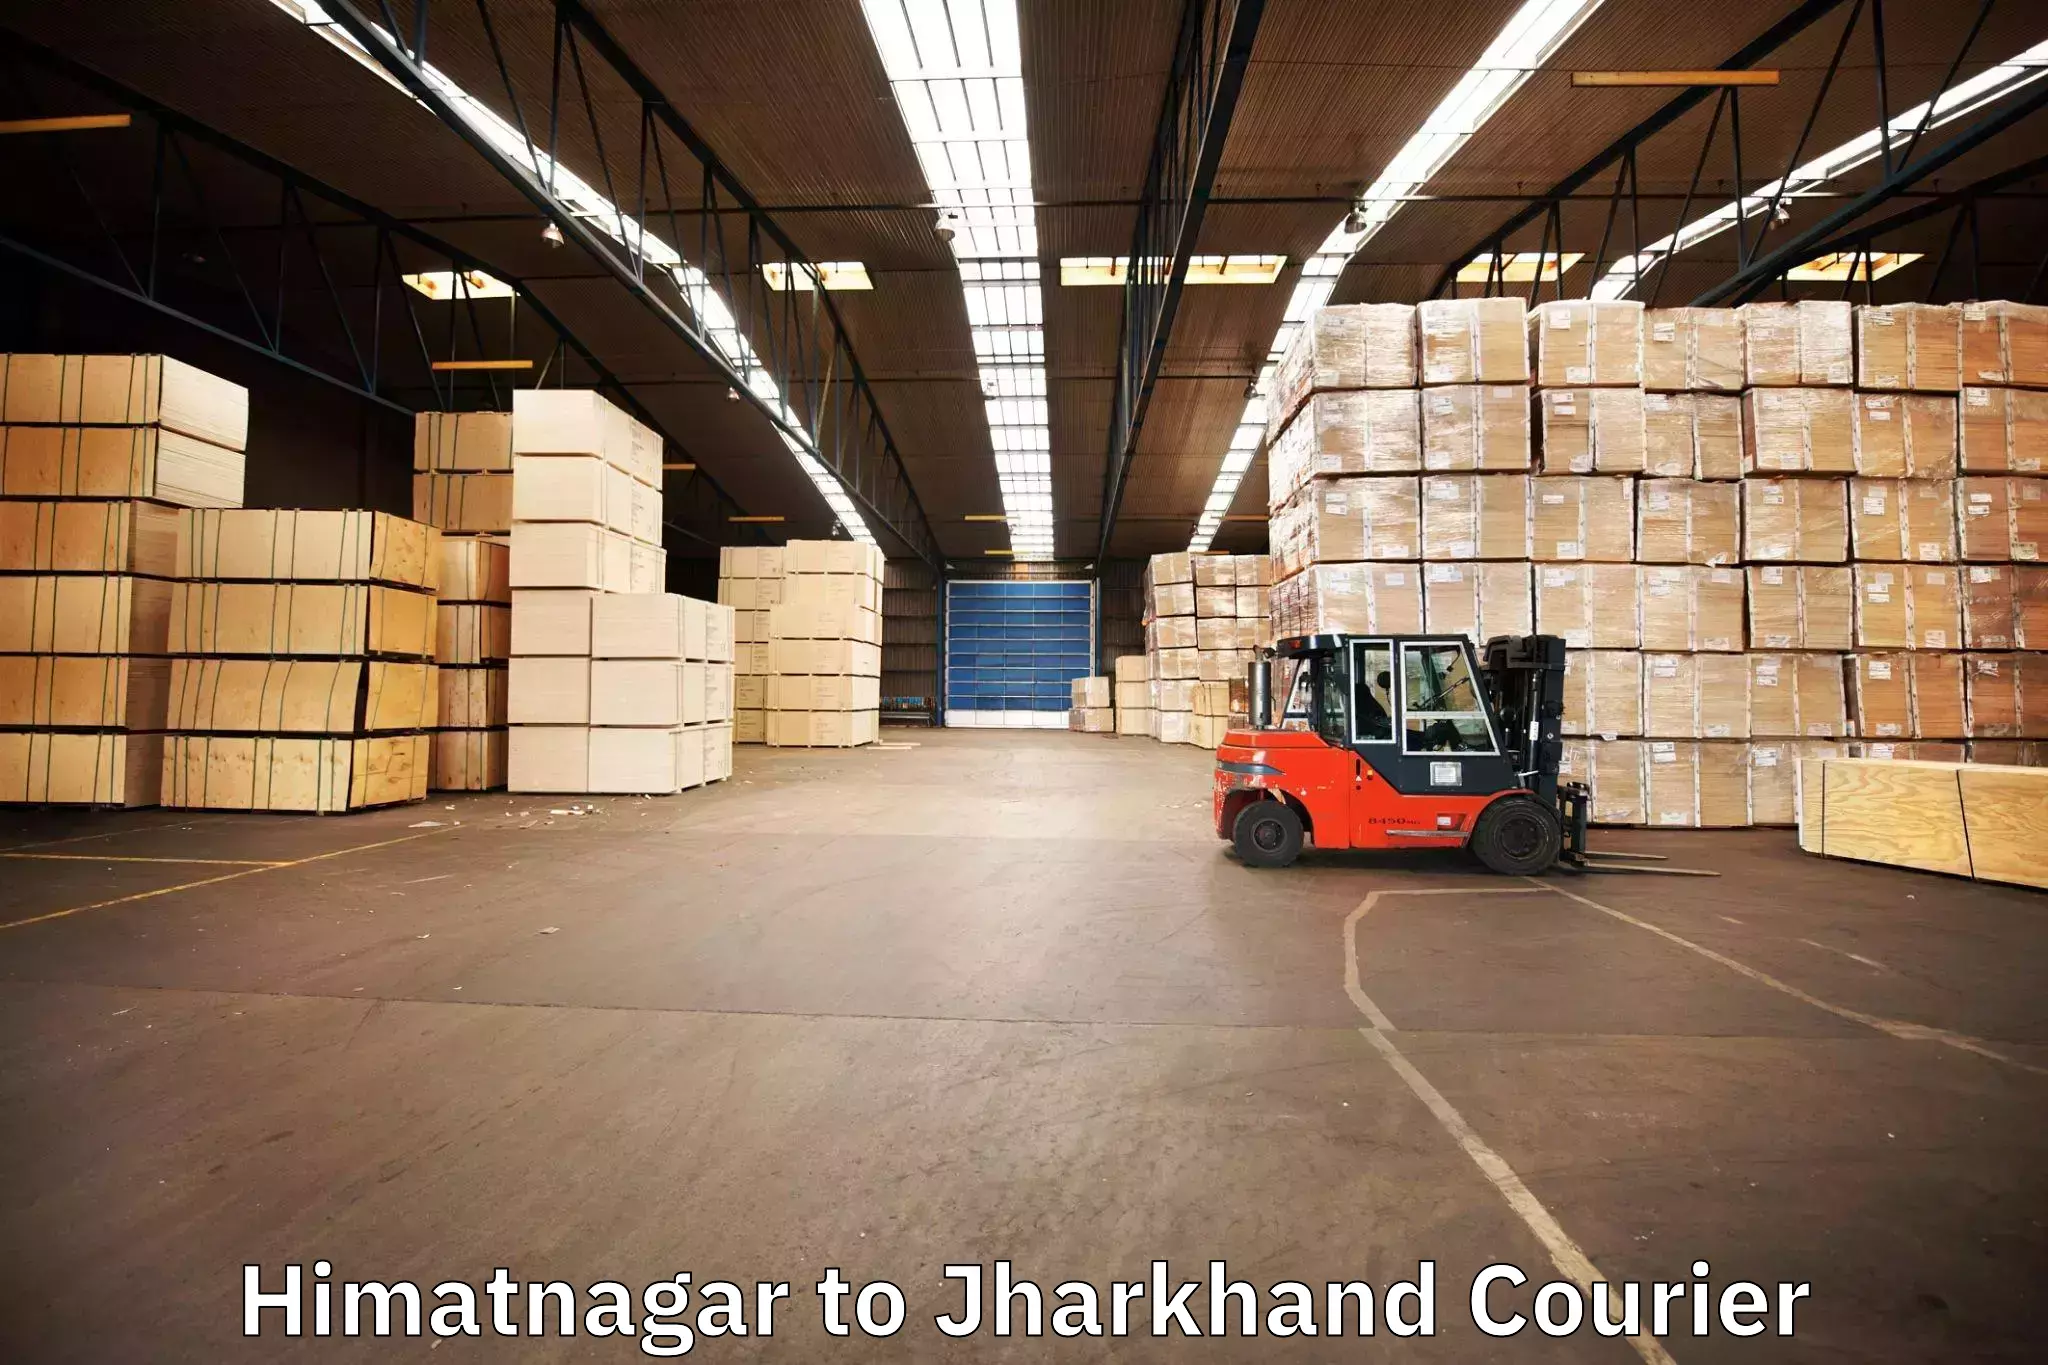 Reliable furniture movers Himatnagar to Jagannathpur